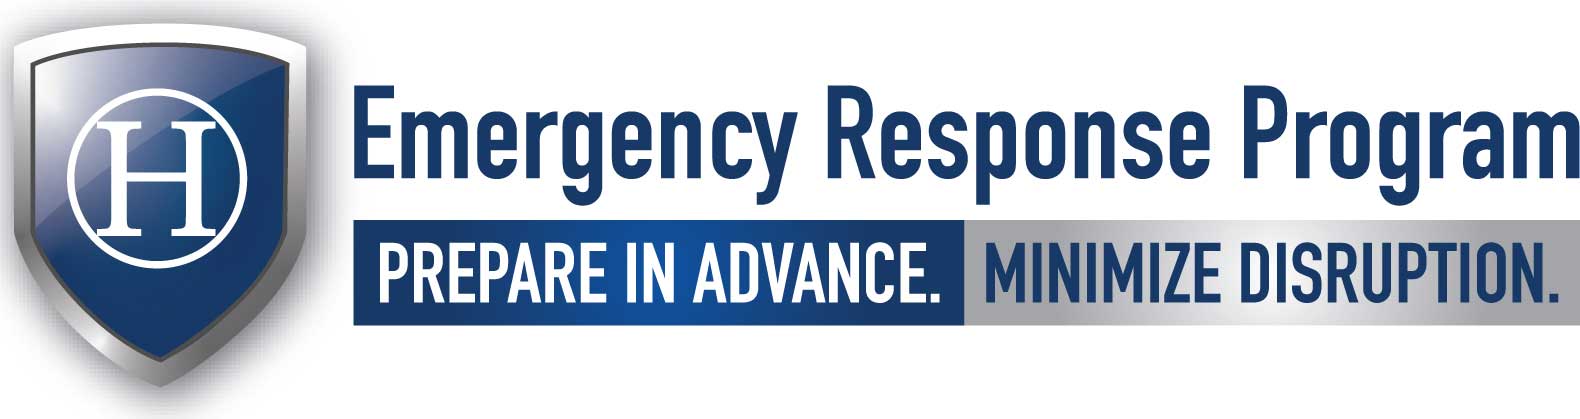 emergency response program